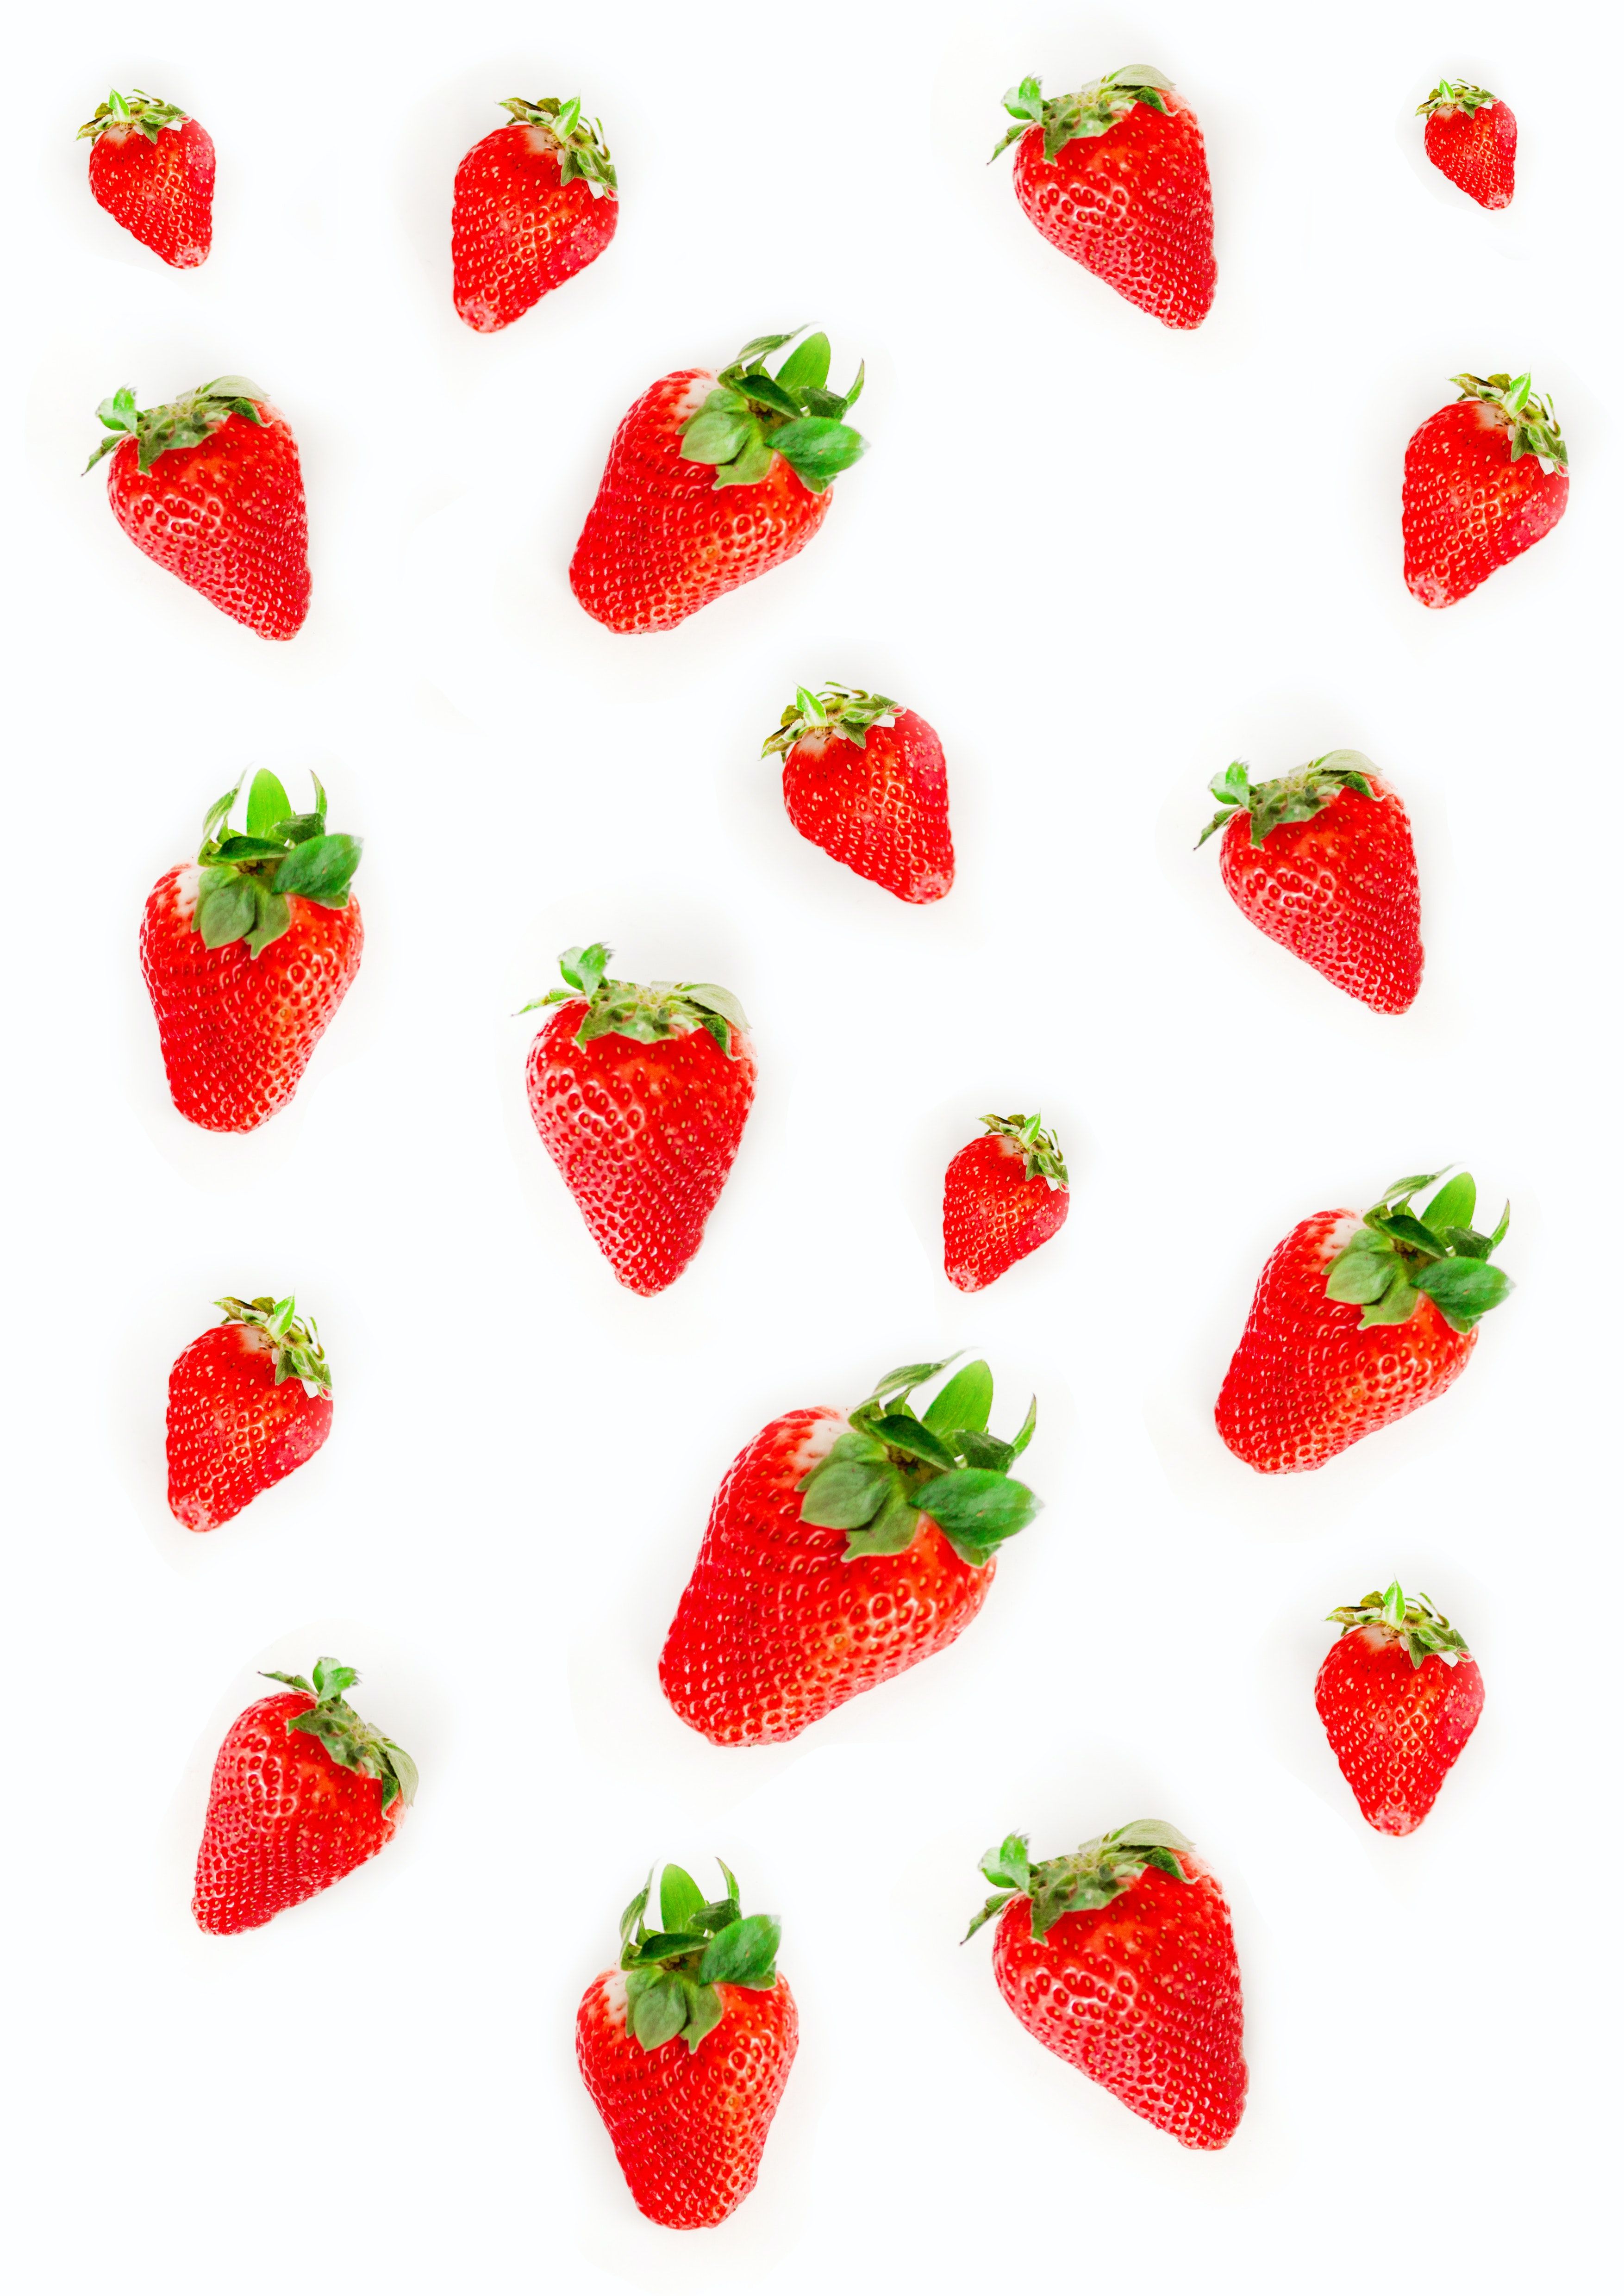  Erdbeeren Hintergrundbild 3508x4961. 4.Erdbeere Bilder Und Fotos · Kostenlos Downloaden · Stock Fotos